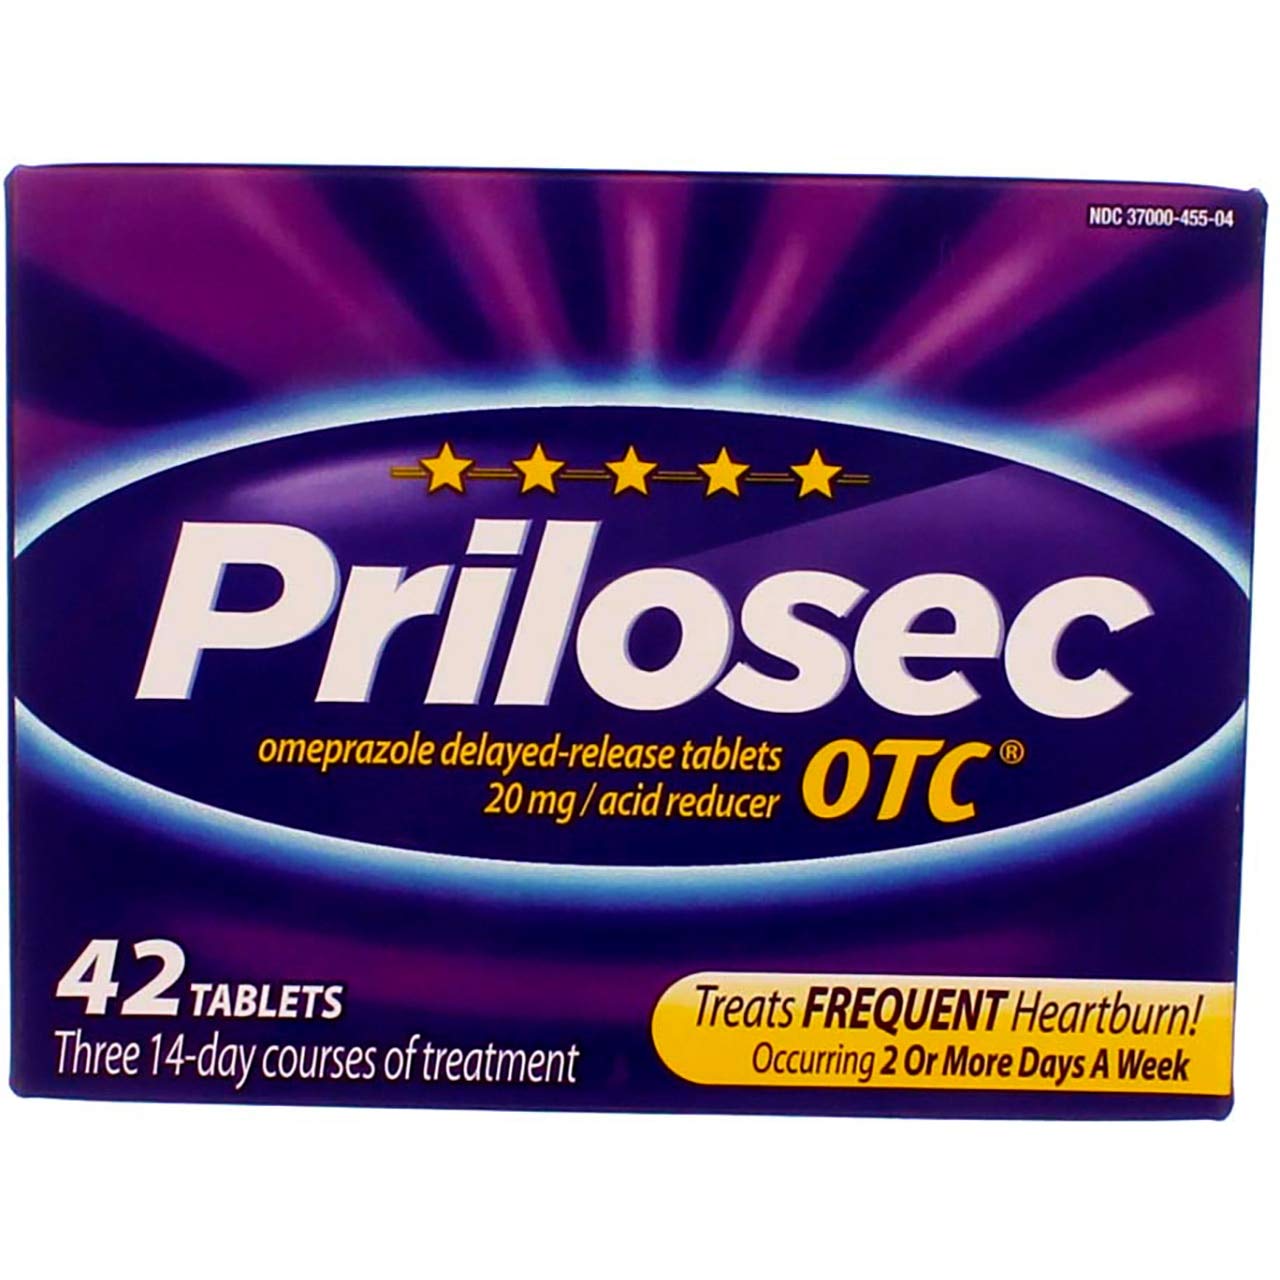 Prilosec OTC™ - Thuốc chữa bệnh đau dạ dày